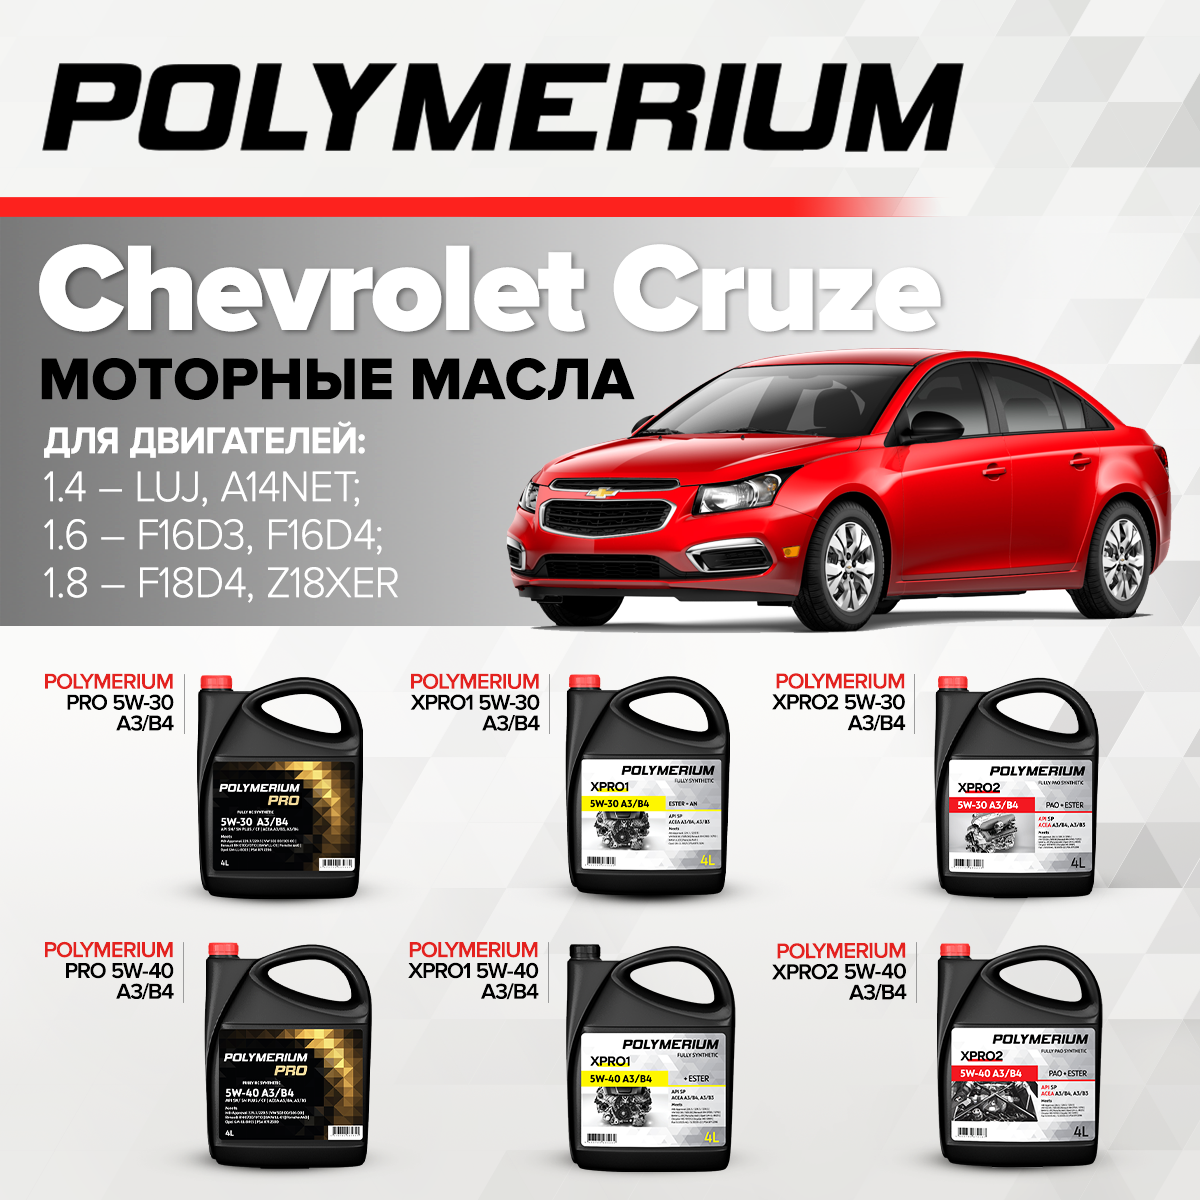 Как выбрать масло для двигателя Chevrolet Cruze?